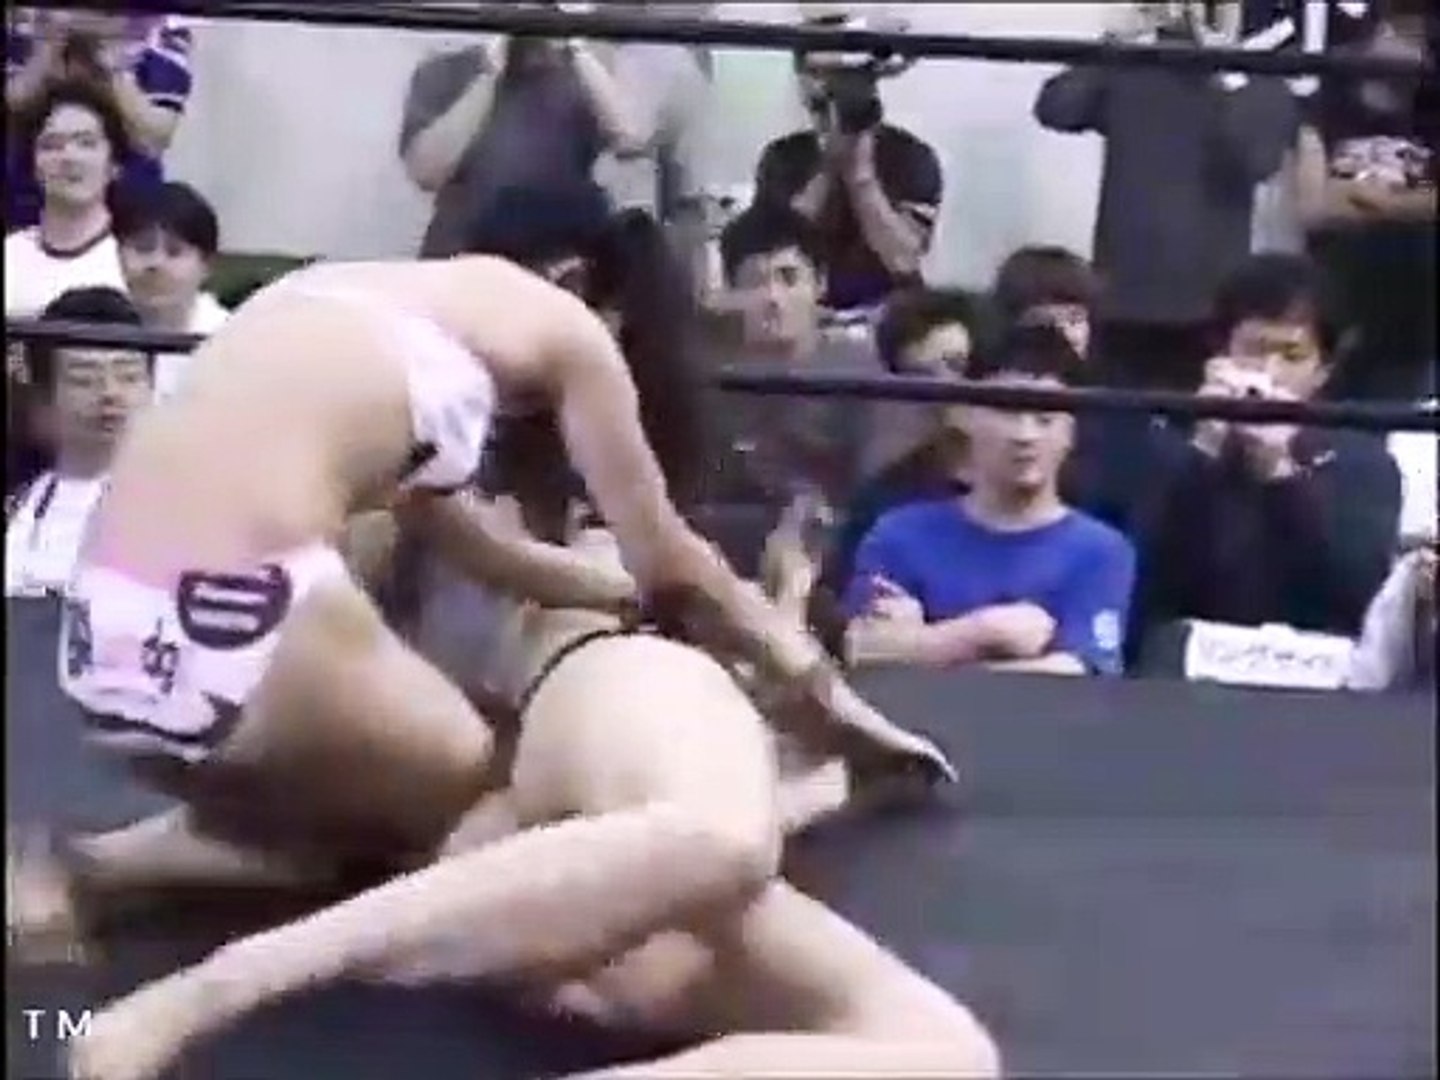 Japanese female wrestling: Black vs Pink